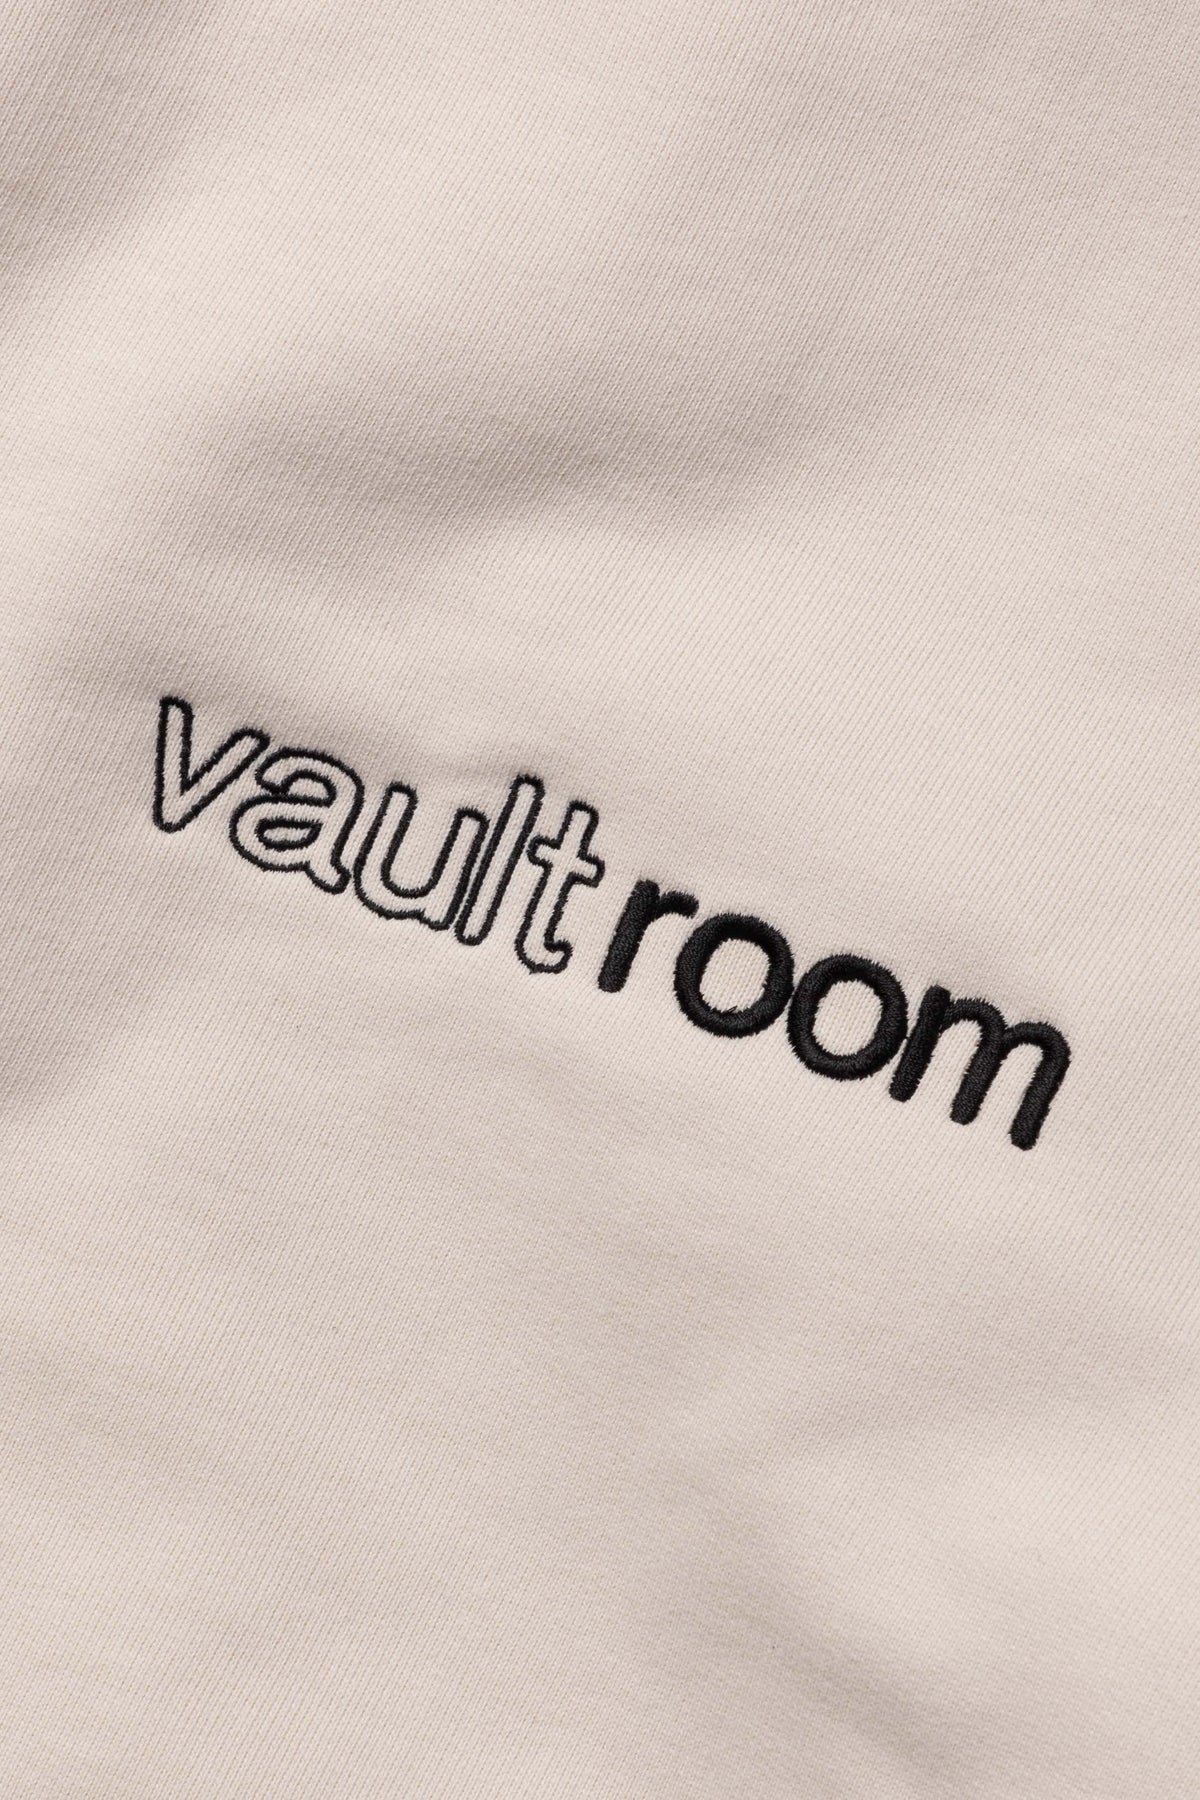 vaultroom "ARISAKAAA" Hoodie / BGE